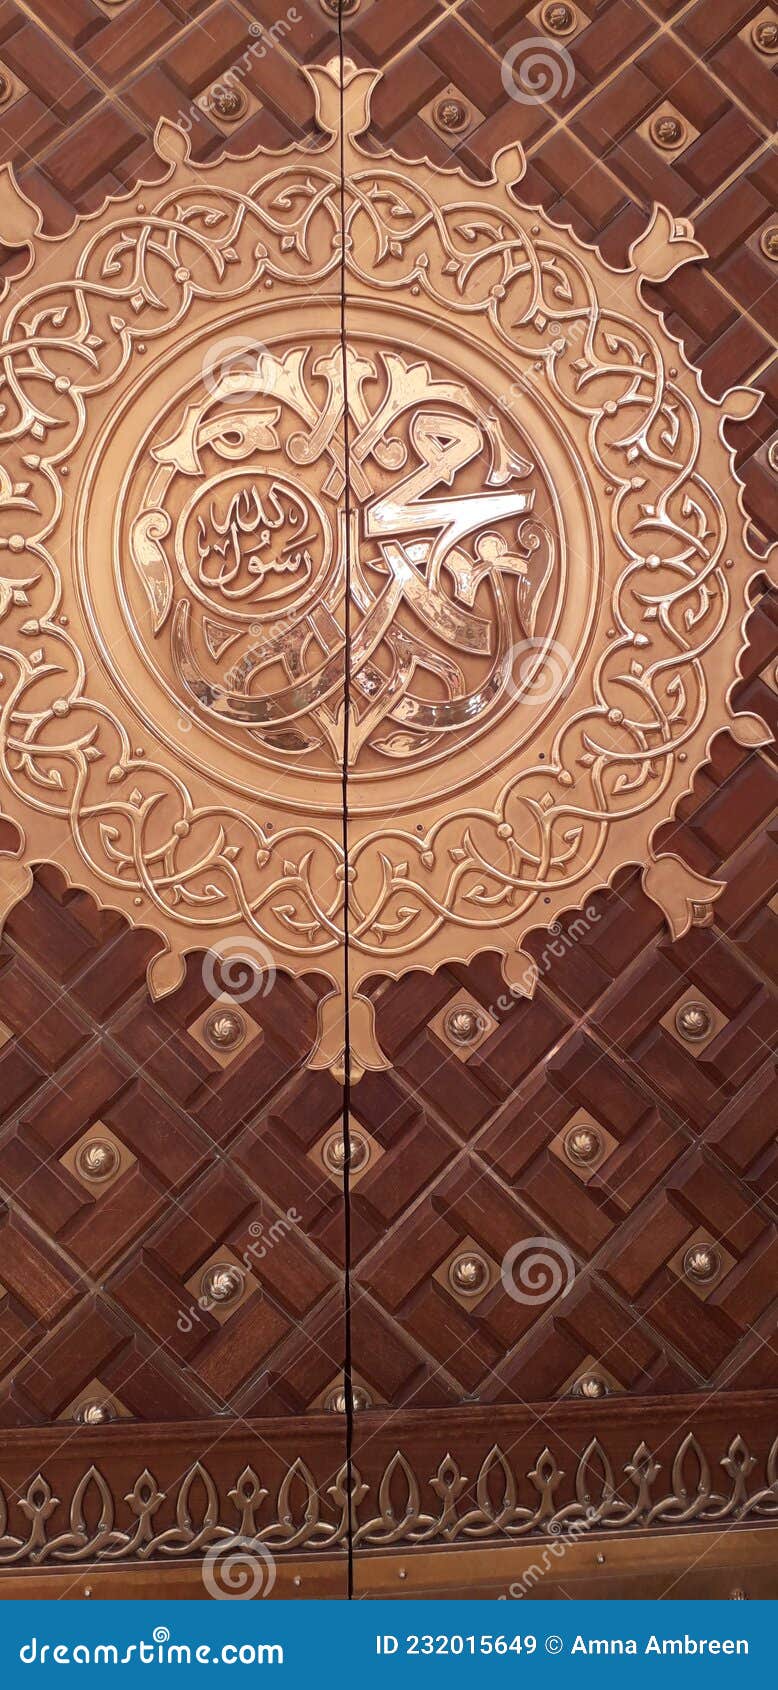 masjid al nabawi door